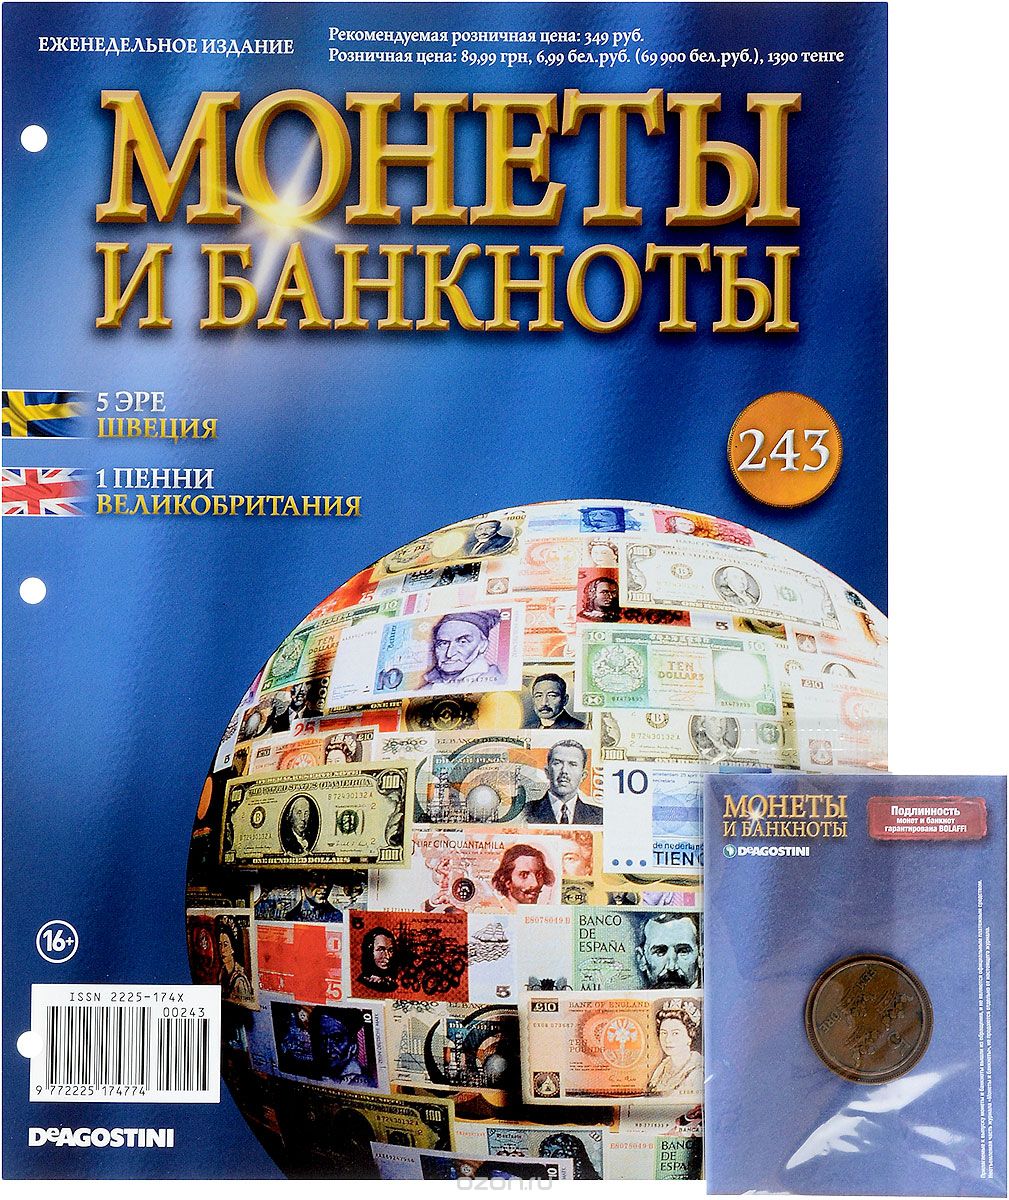 Скачать книгу "Журнал "Монеты и банкноты" №243"